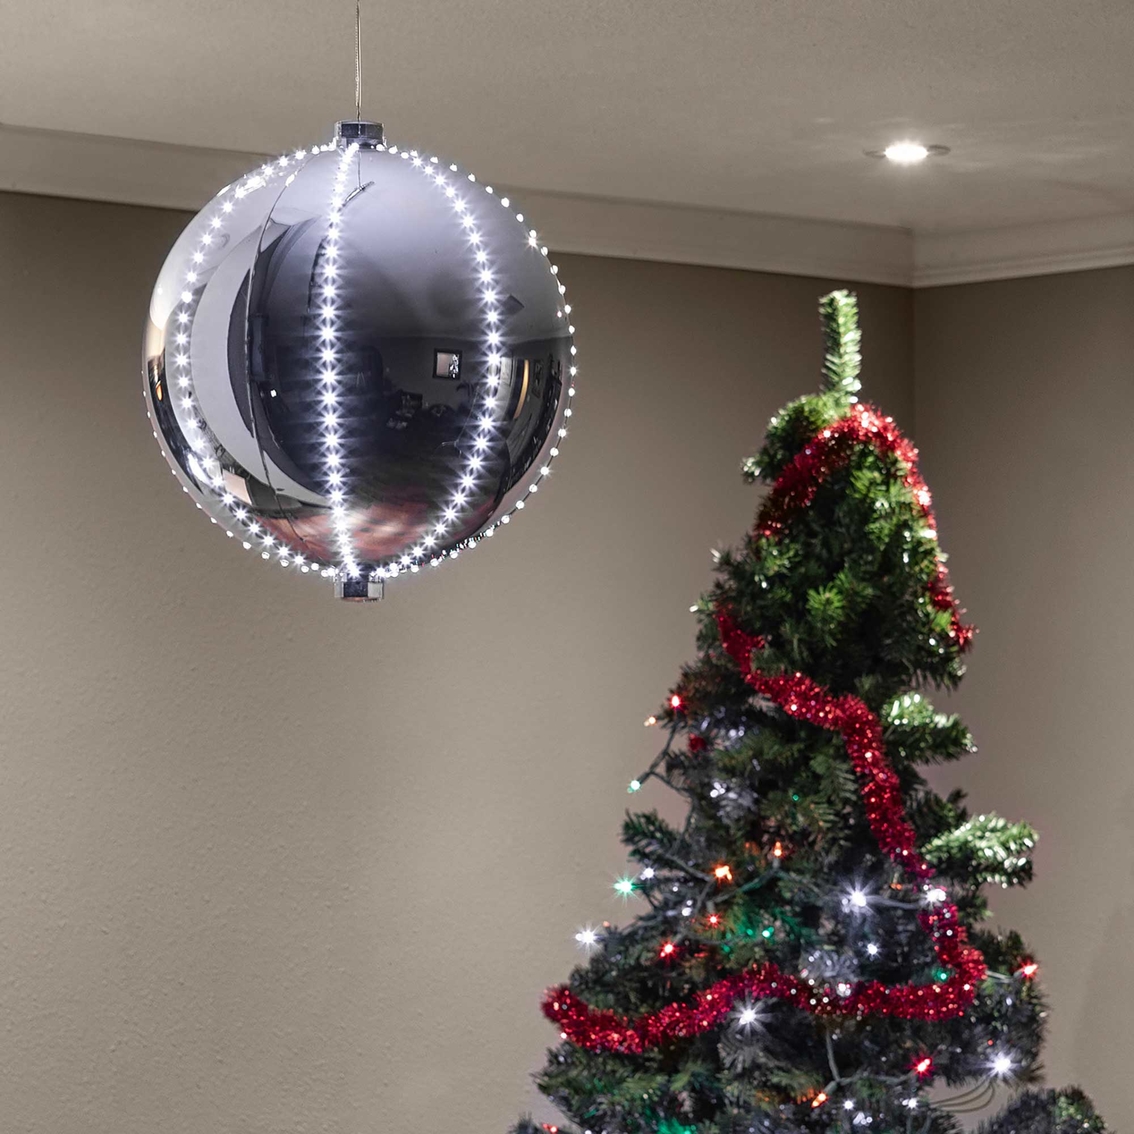 Alpine Christmas Ball Decor with LED Lights - Image 2 of 6